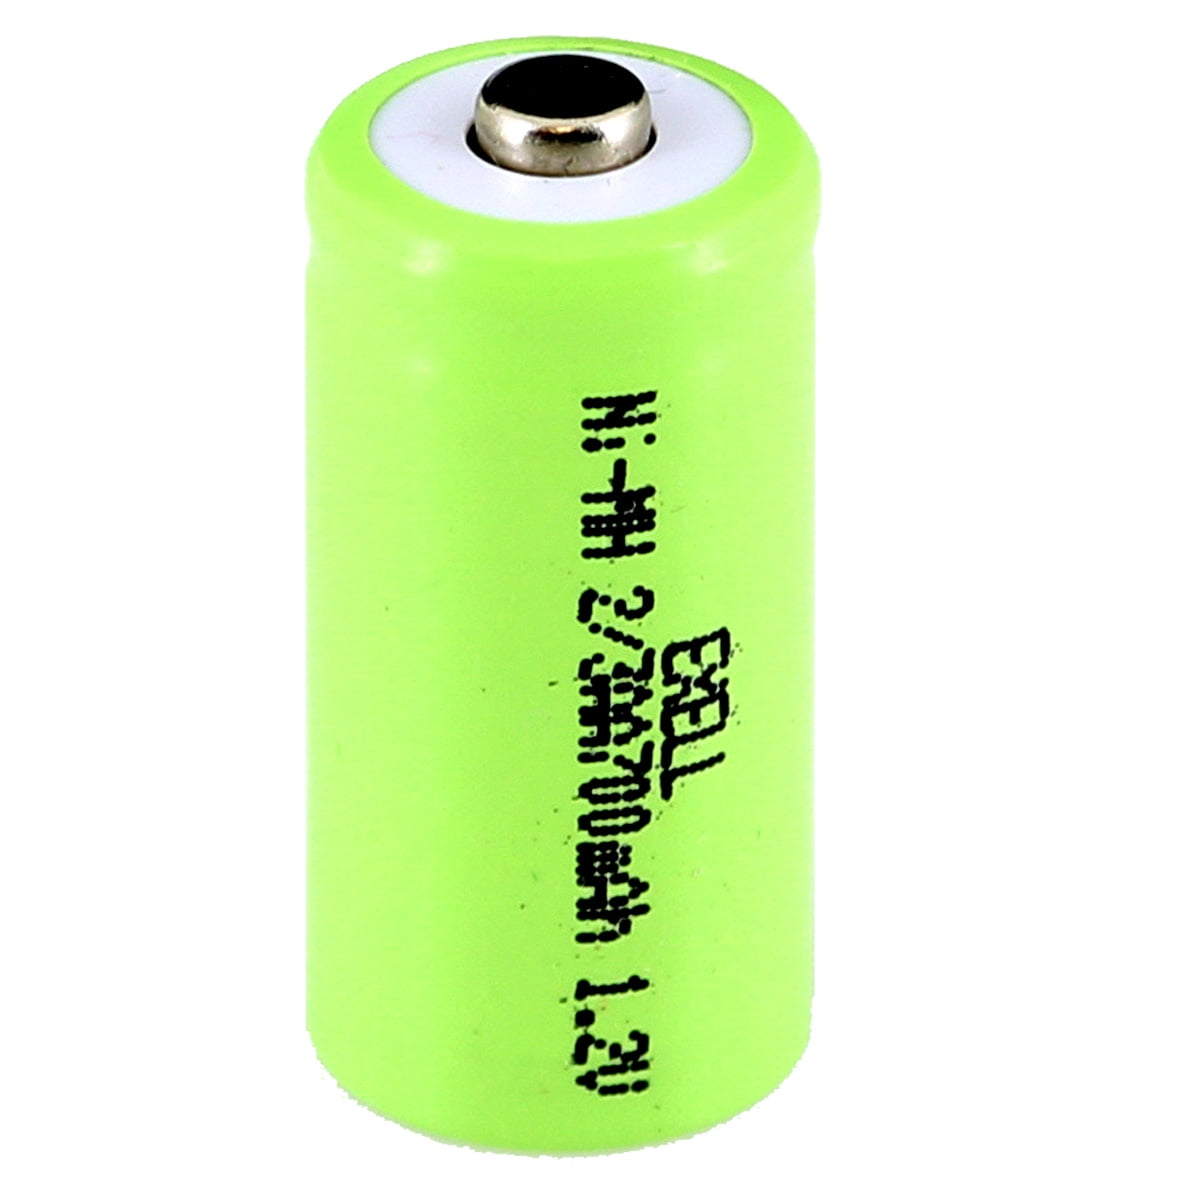 2x Pila 18650 Bateria Recargable 4200mah Li-ion 3,7v + Cargador Power Bank  con Ofertas en Carrefour